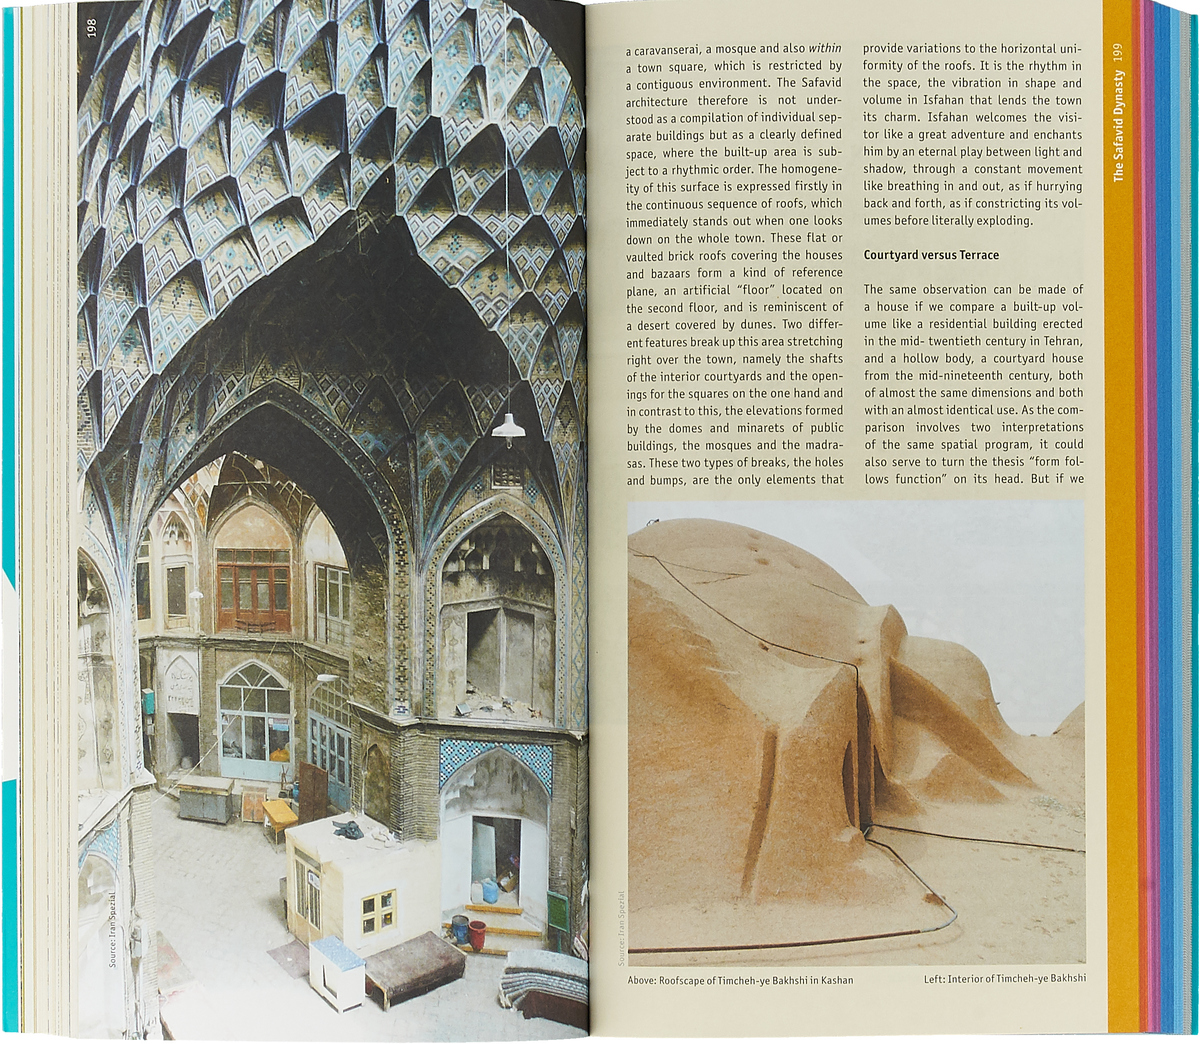 Iran: Architectural Guide